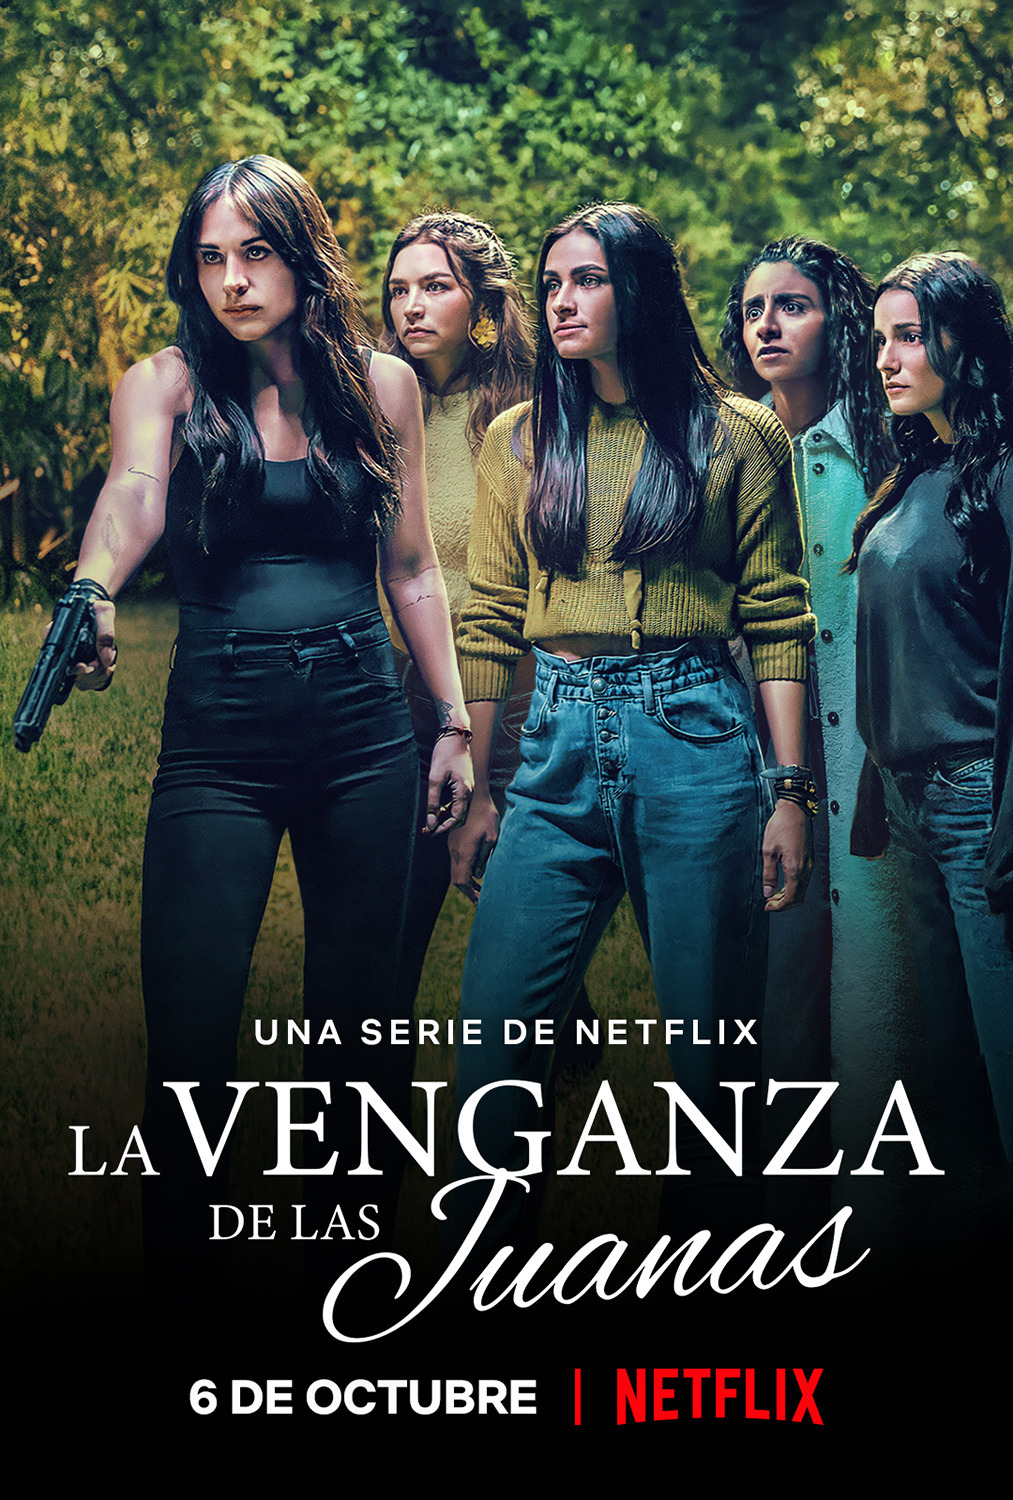 Extra Large TV Poster Image for La Venganza de las Juanas 